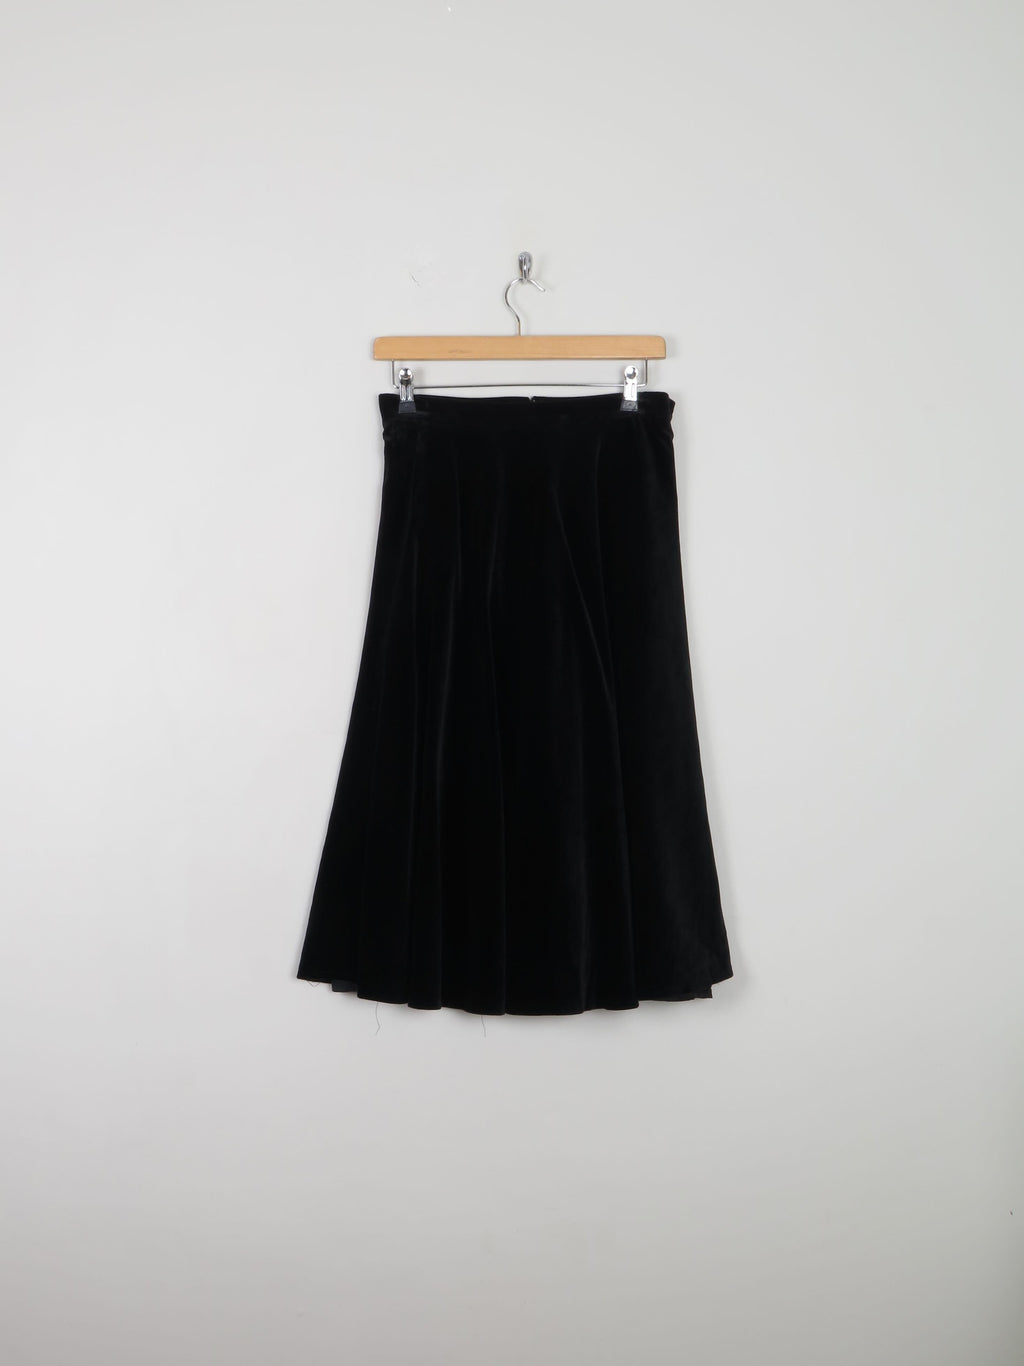 Black Velvet Vintage Full Skirt Midi S 28" - The Harlequin